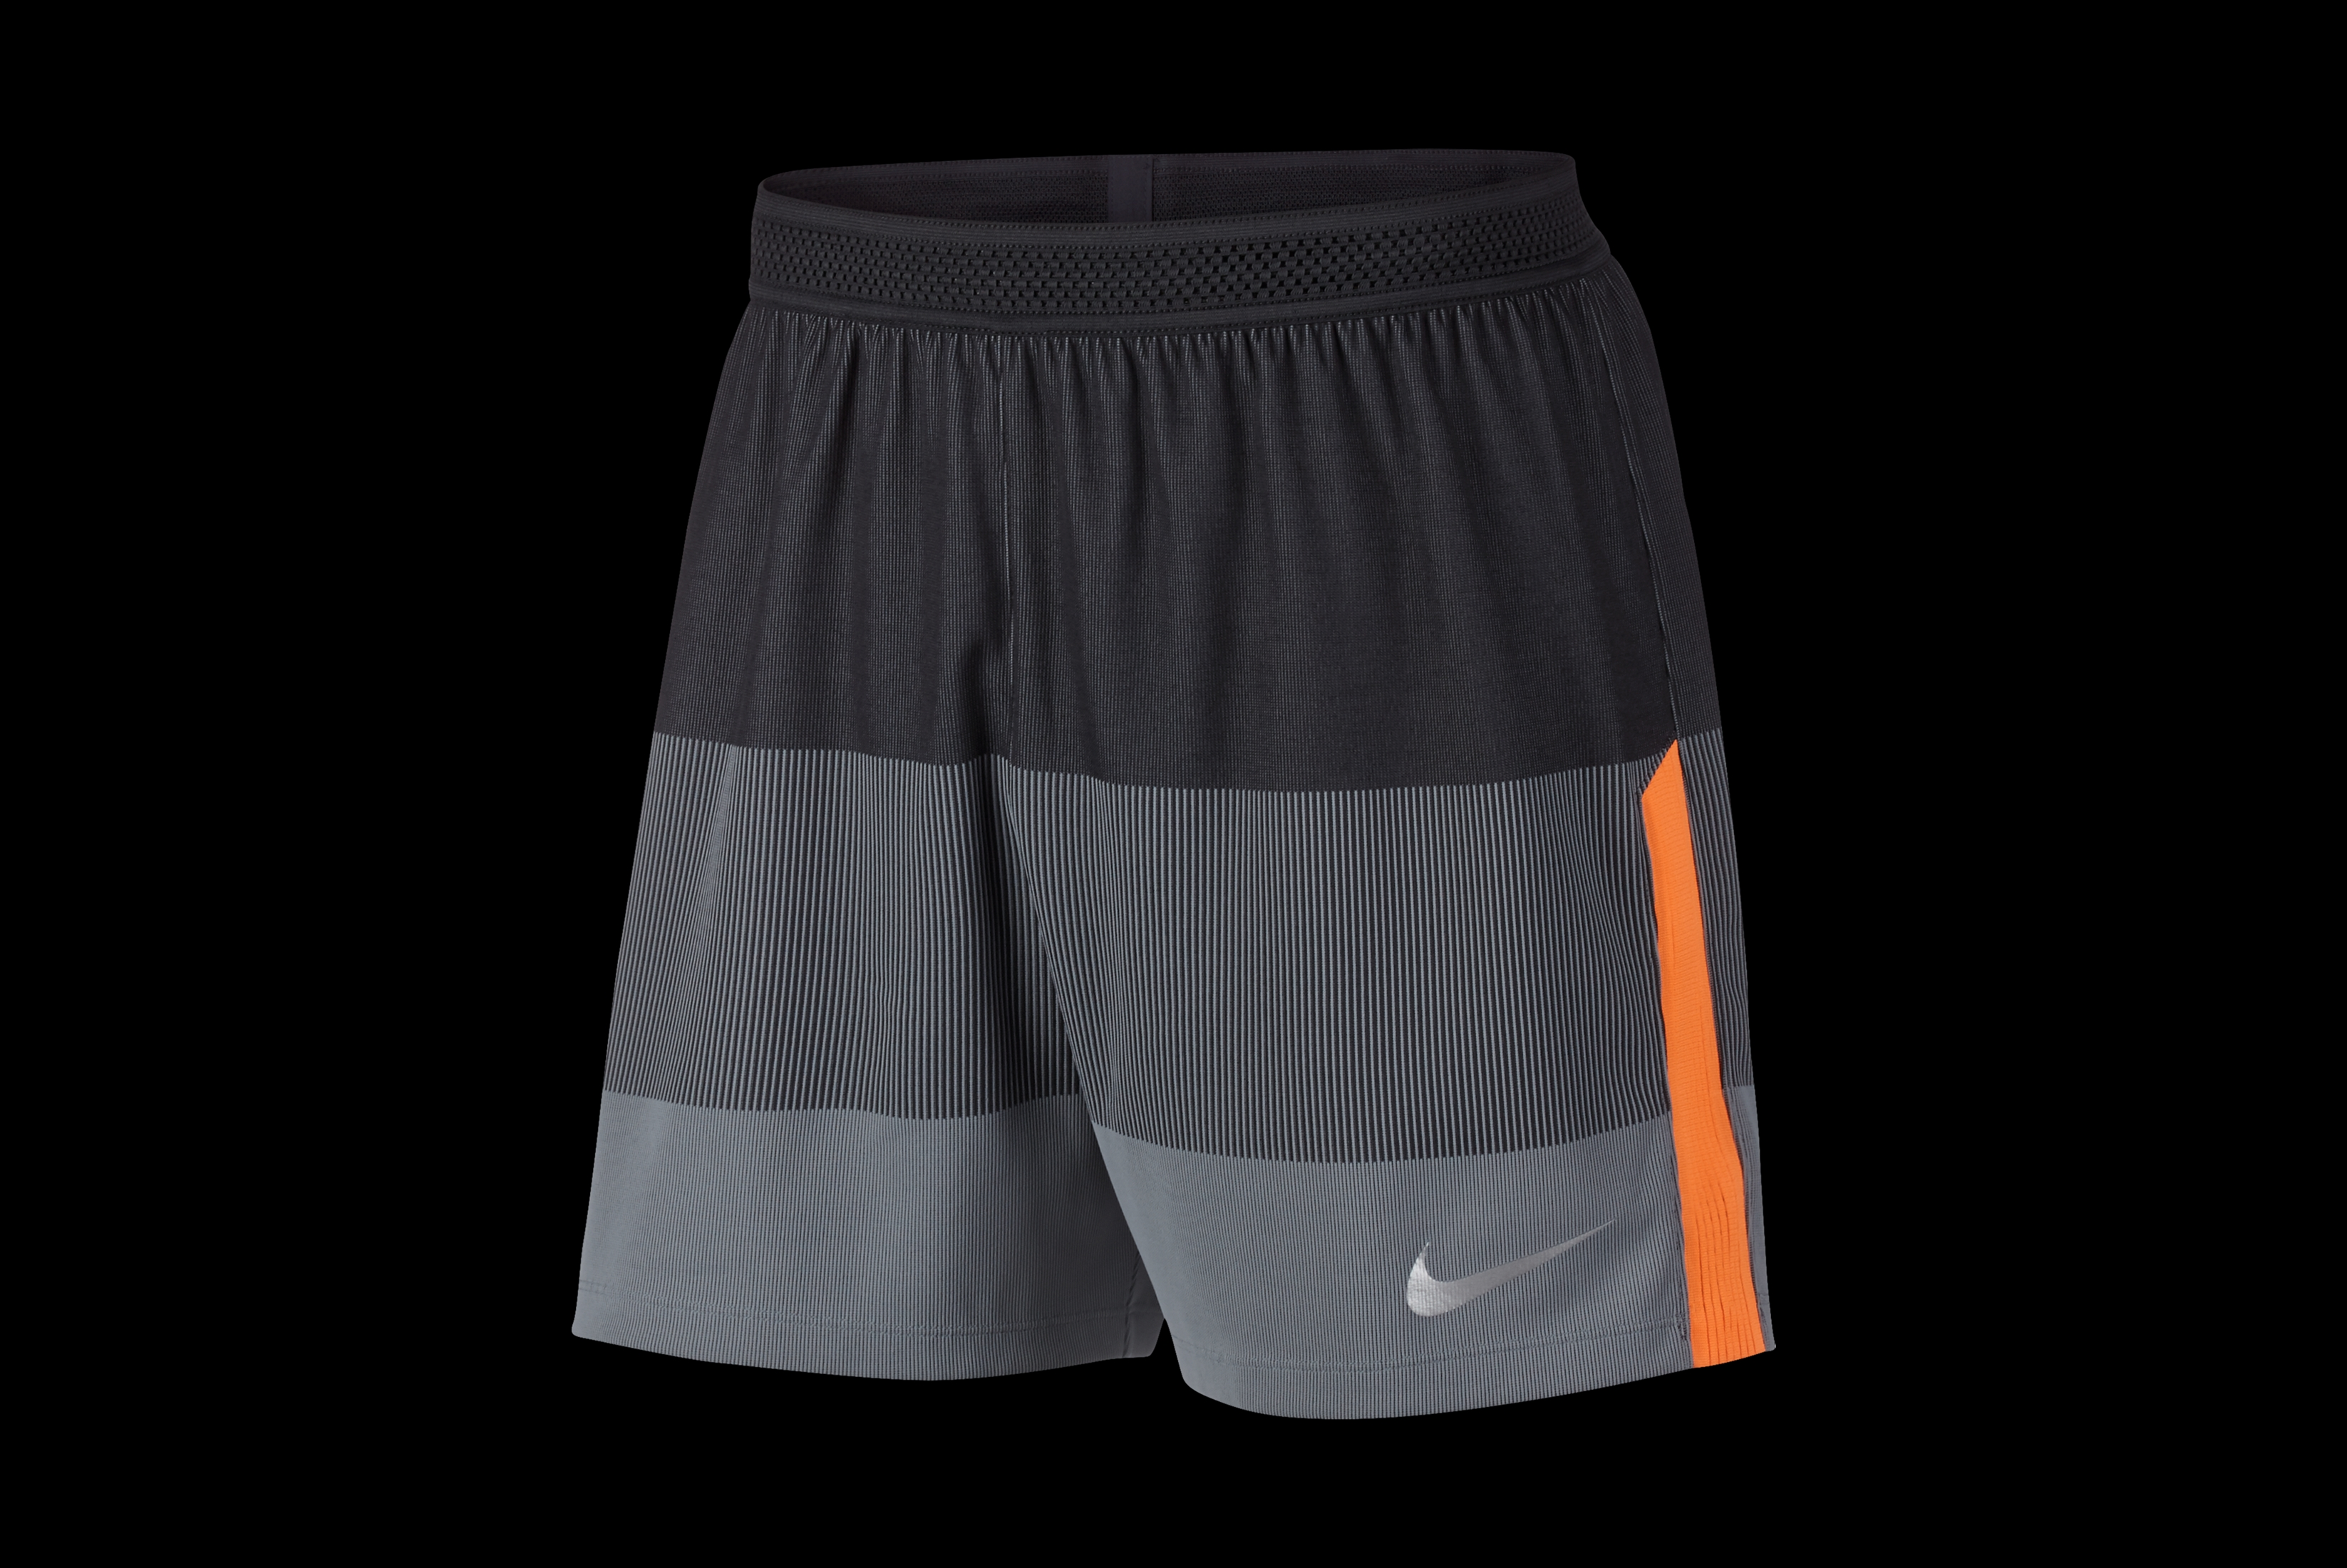 Nike aeroswift. Nike AEROSWIFT шорты. Шорты Nike AEROSWIFT Mens. Nike AEROSWIFT Oregon шорты. Nike AEROSWIFT Football shorts.